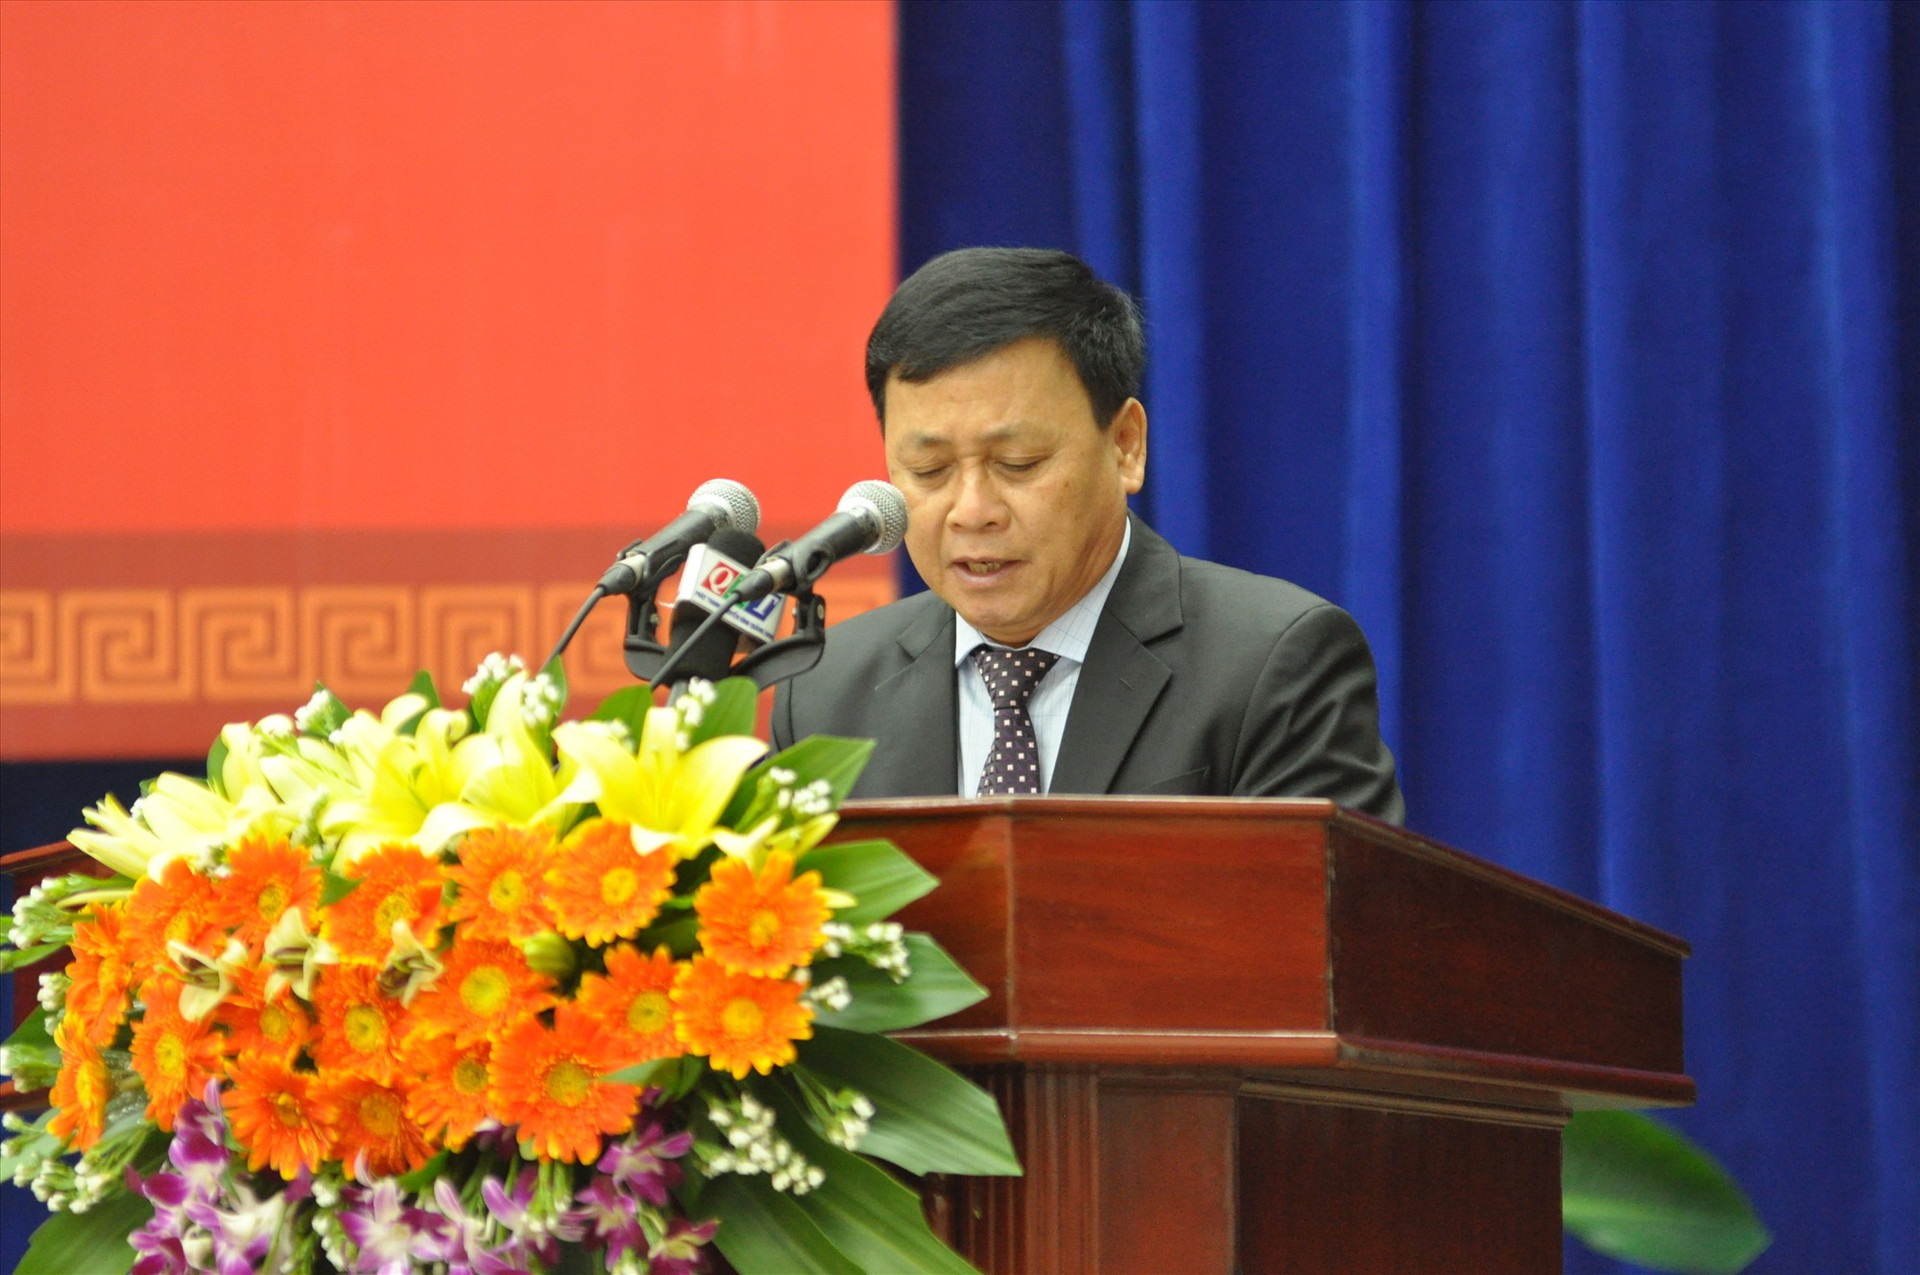 Giám đốc Sở Kế hoạch đầu tư Nguyễn Quang Thử trình bày tờ trình quy định chính sách, giải pháp đẩy mạnh xã hội hóa trong một số lĩnh vực. Ảnh: X.P